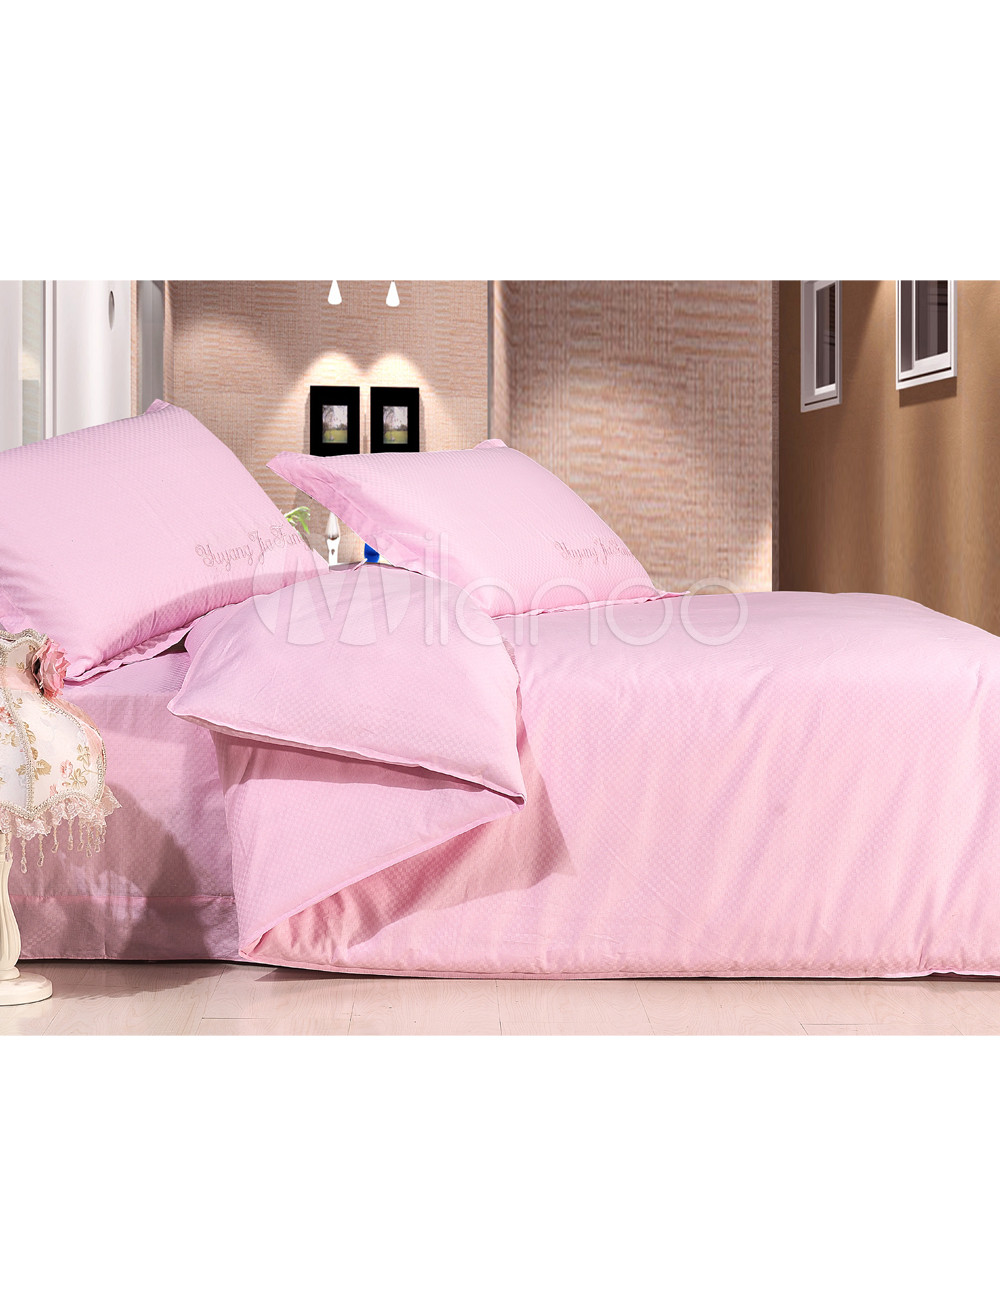 4-pc Beautiful Pink Silk Quilt Duvet Cover Bedding Set